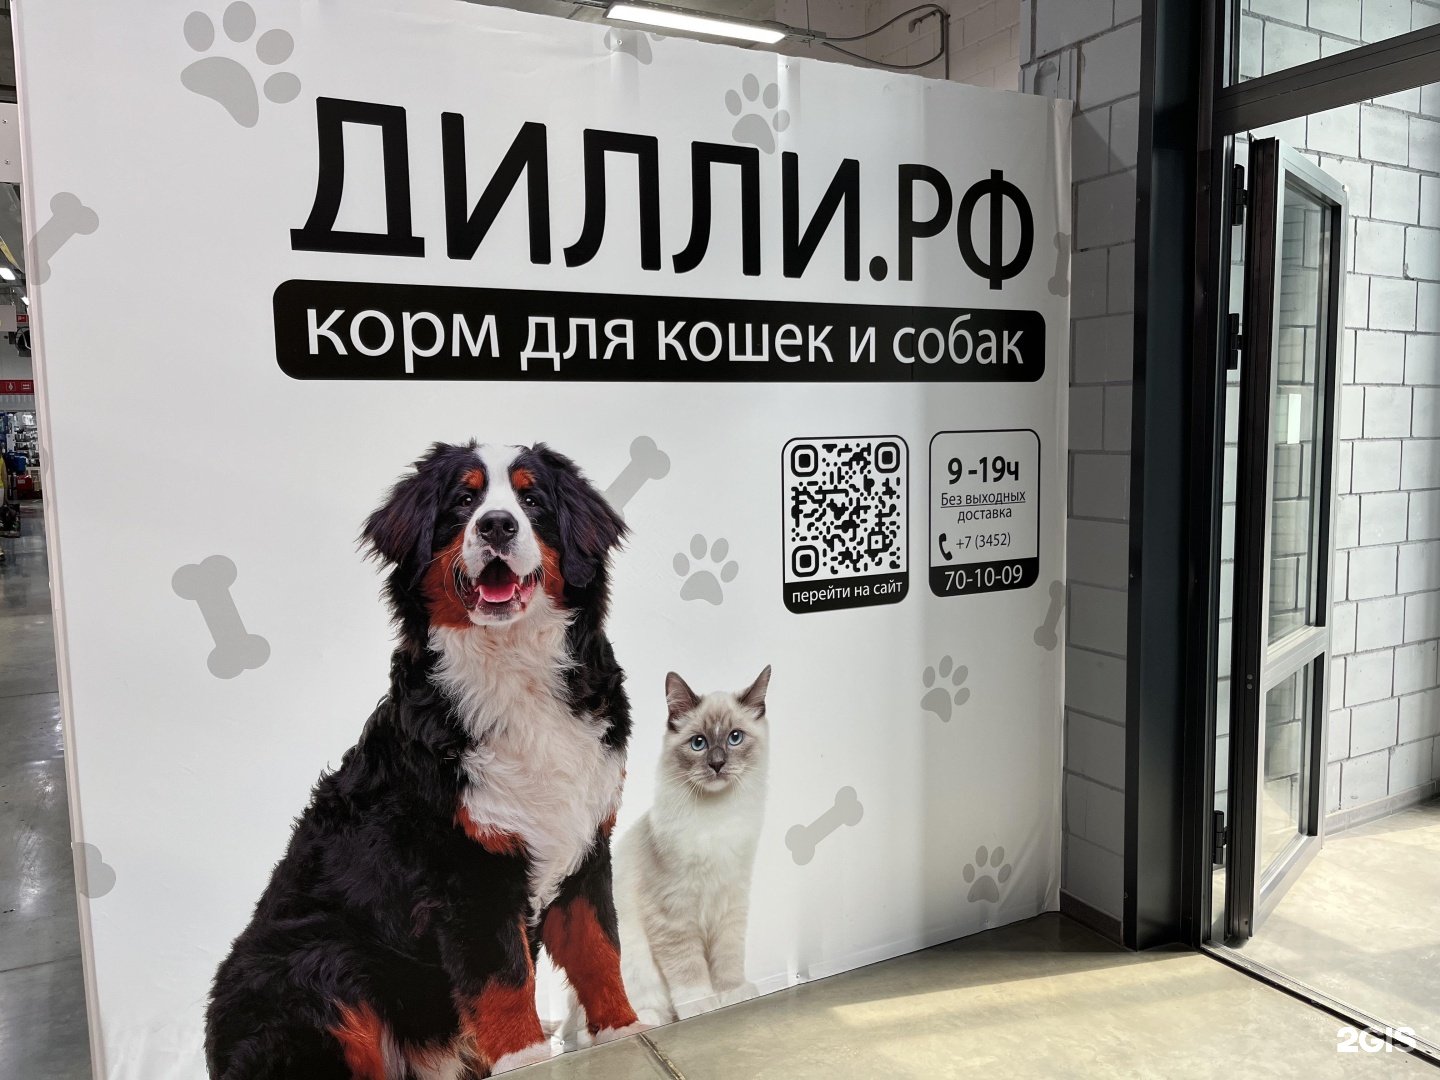 Можно с собаками в тц. Собака в ТЦ. Зоны для собак в ТЦ Москвы.